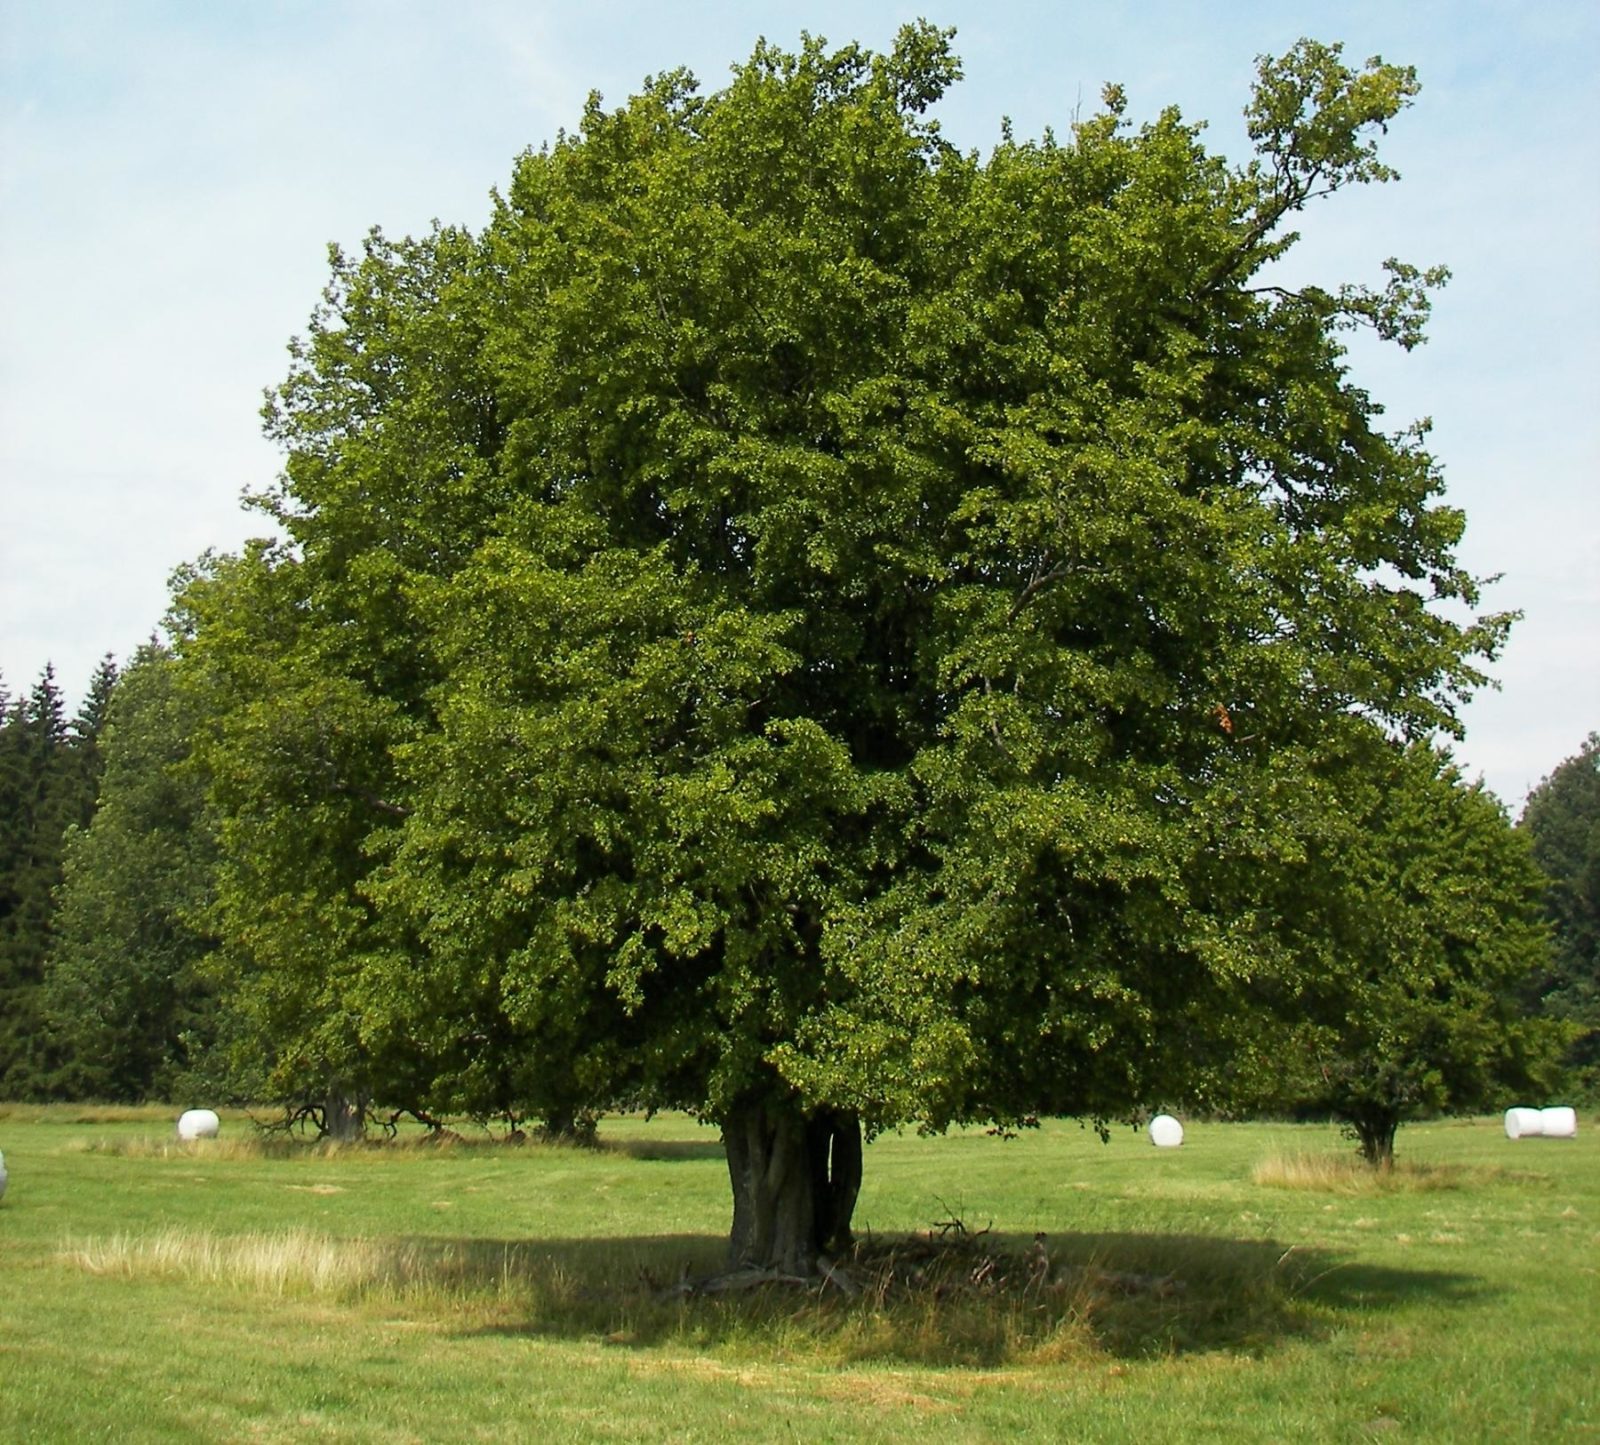 деревья области фото и названия